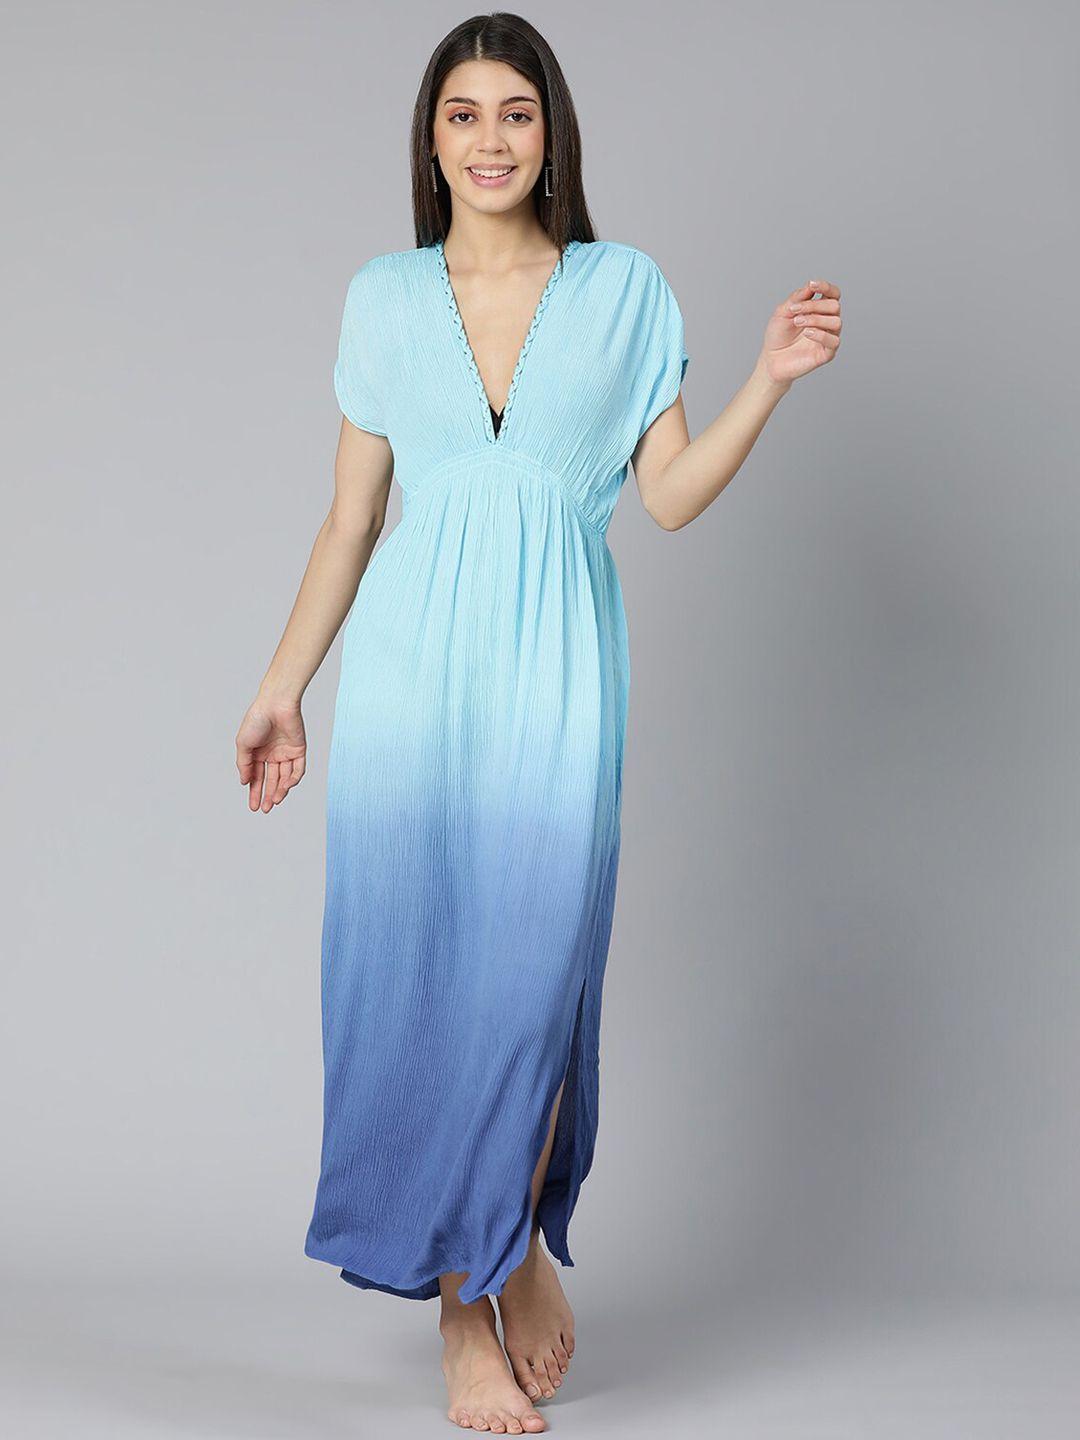 oxolloxo women blue tie & dye printed beachwear dress